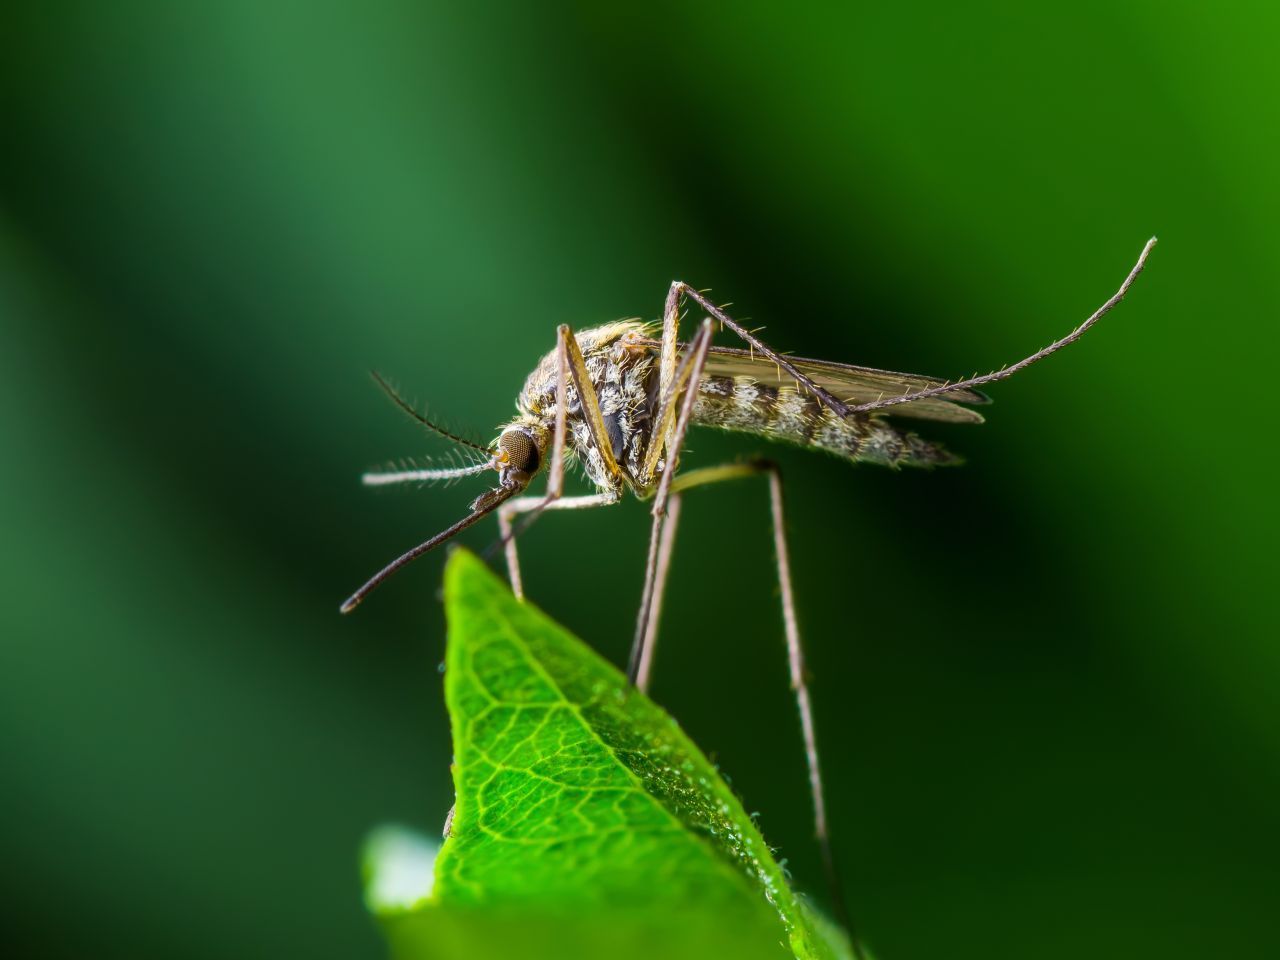 Mit der Hitze kommen die Mücken. Von ihrer exotischen Heimat aus erobern sie den Norden. Laut einer neuen Hochrechnung könnten in den nächsten Jahrzehnten eine halbe Milliarde Menschen zusätzlich jenen Stechtieren ausgesetzt sein, die gefährliche Tropenkrankheiten wie Malaria, Dengue- oder Gelbfieber übertragen. Europa zählt zu den Regionen, die mit einem starken Befall rechnen müssen. In Süddeutschland wurden schon 2017 asia